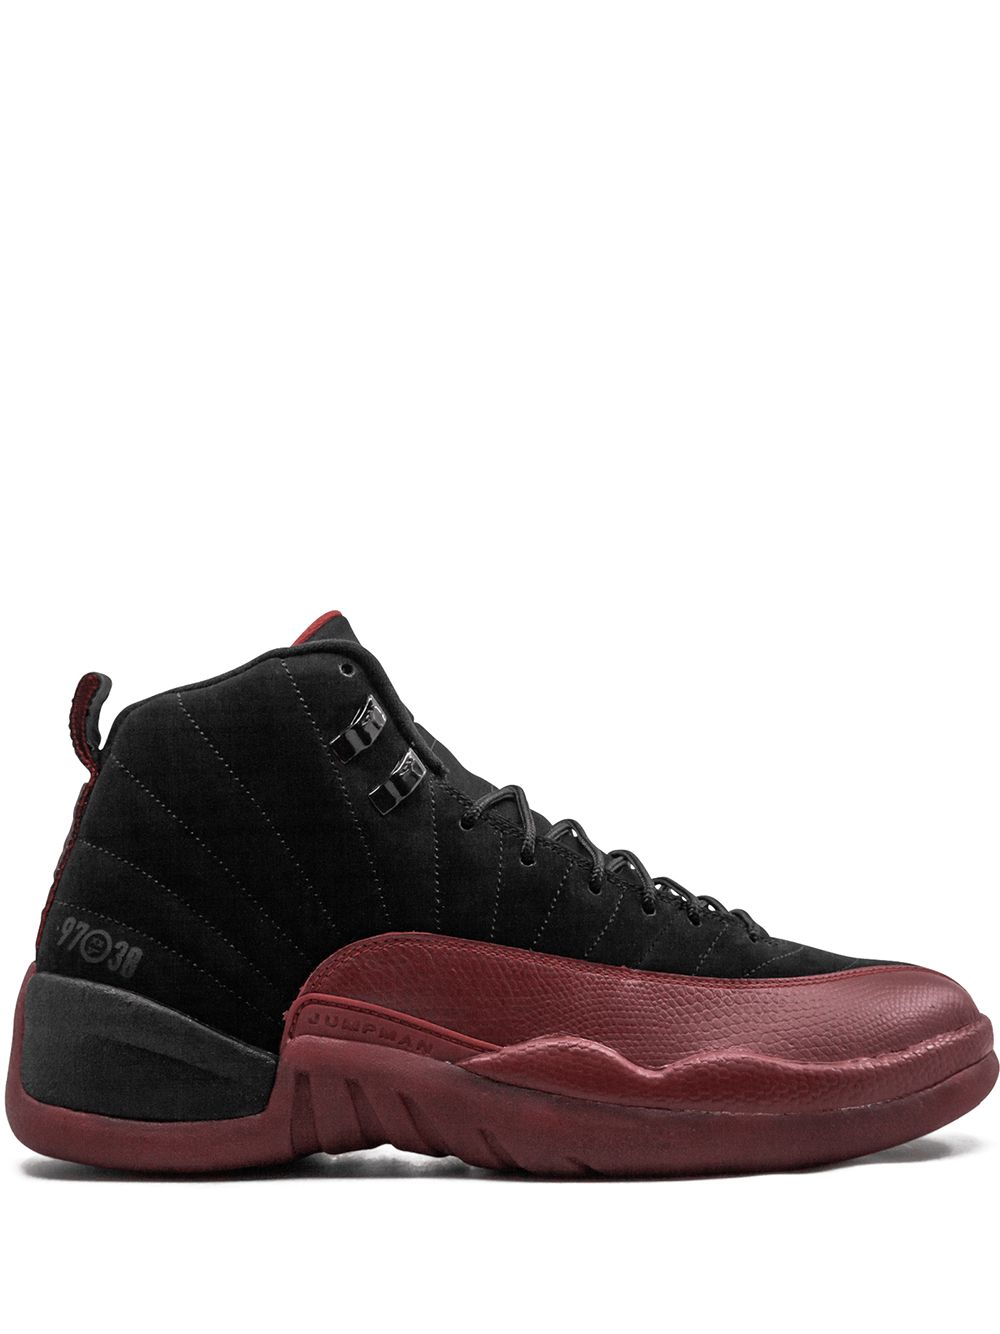 Jordan Air Jordan 12 Retro "Flu Game" sneakers - Black